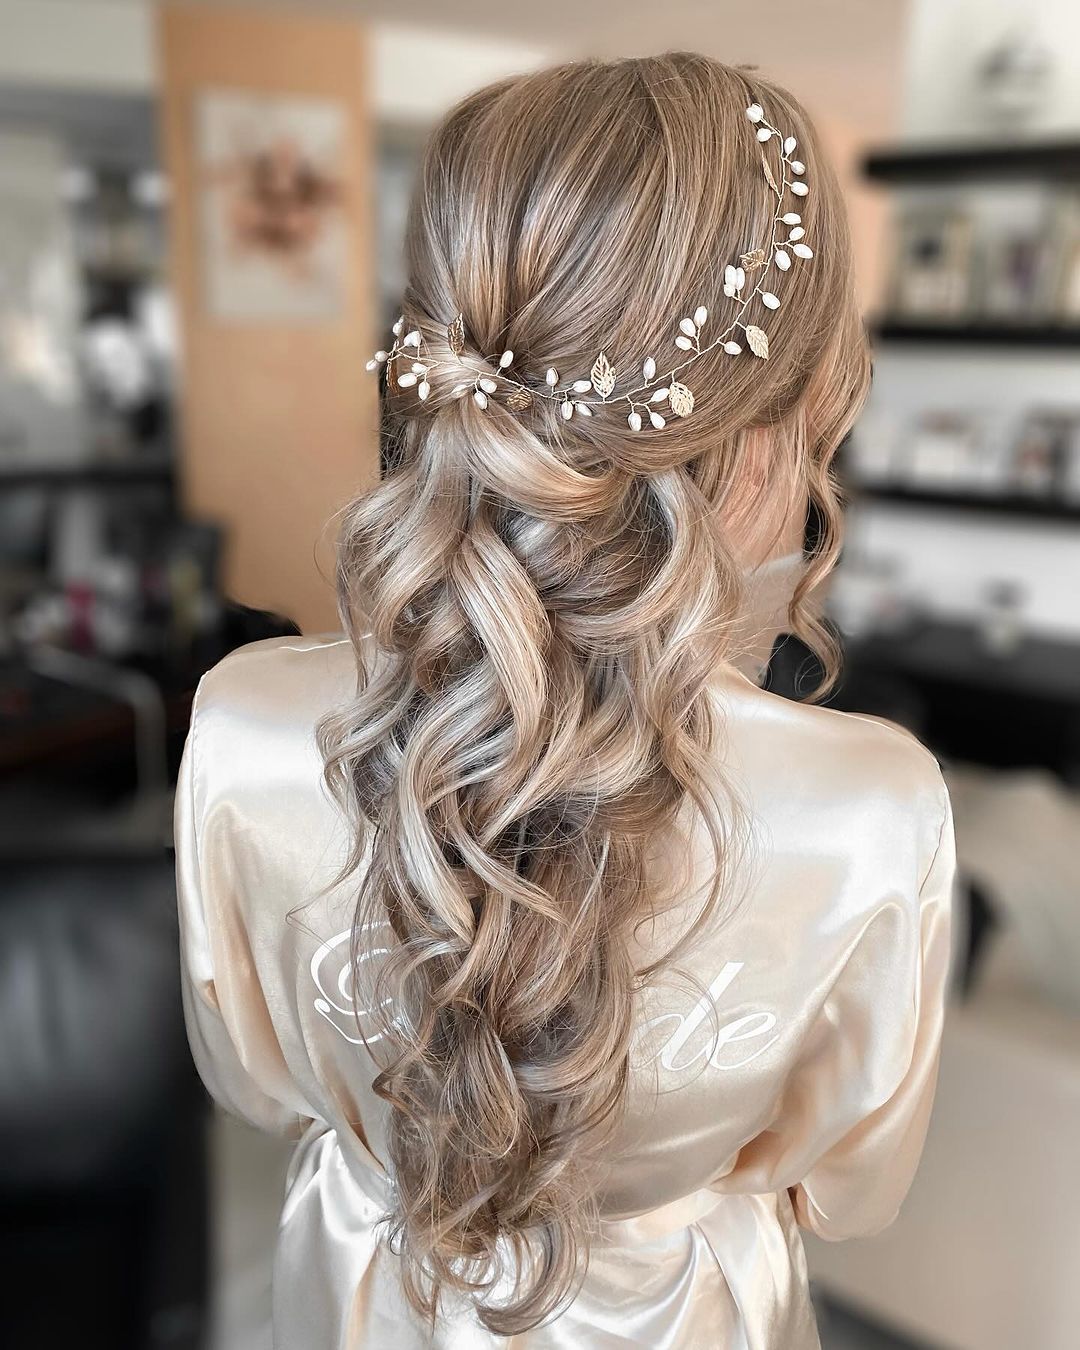 mermaid braid with flower crown